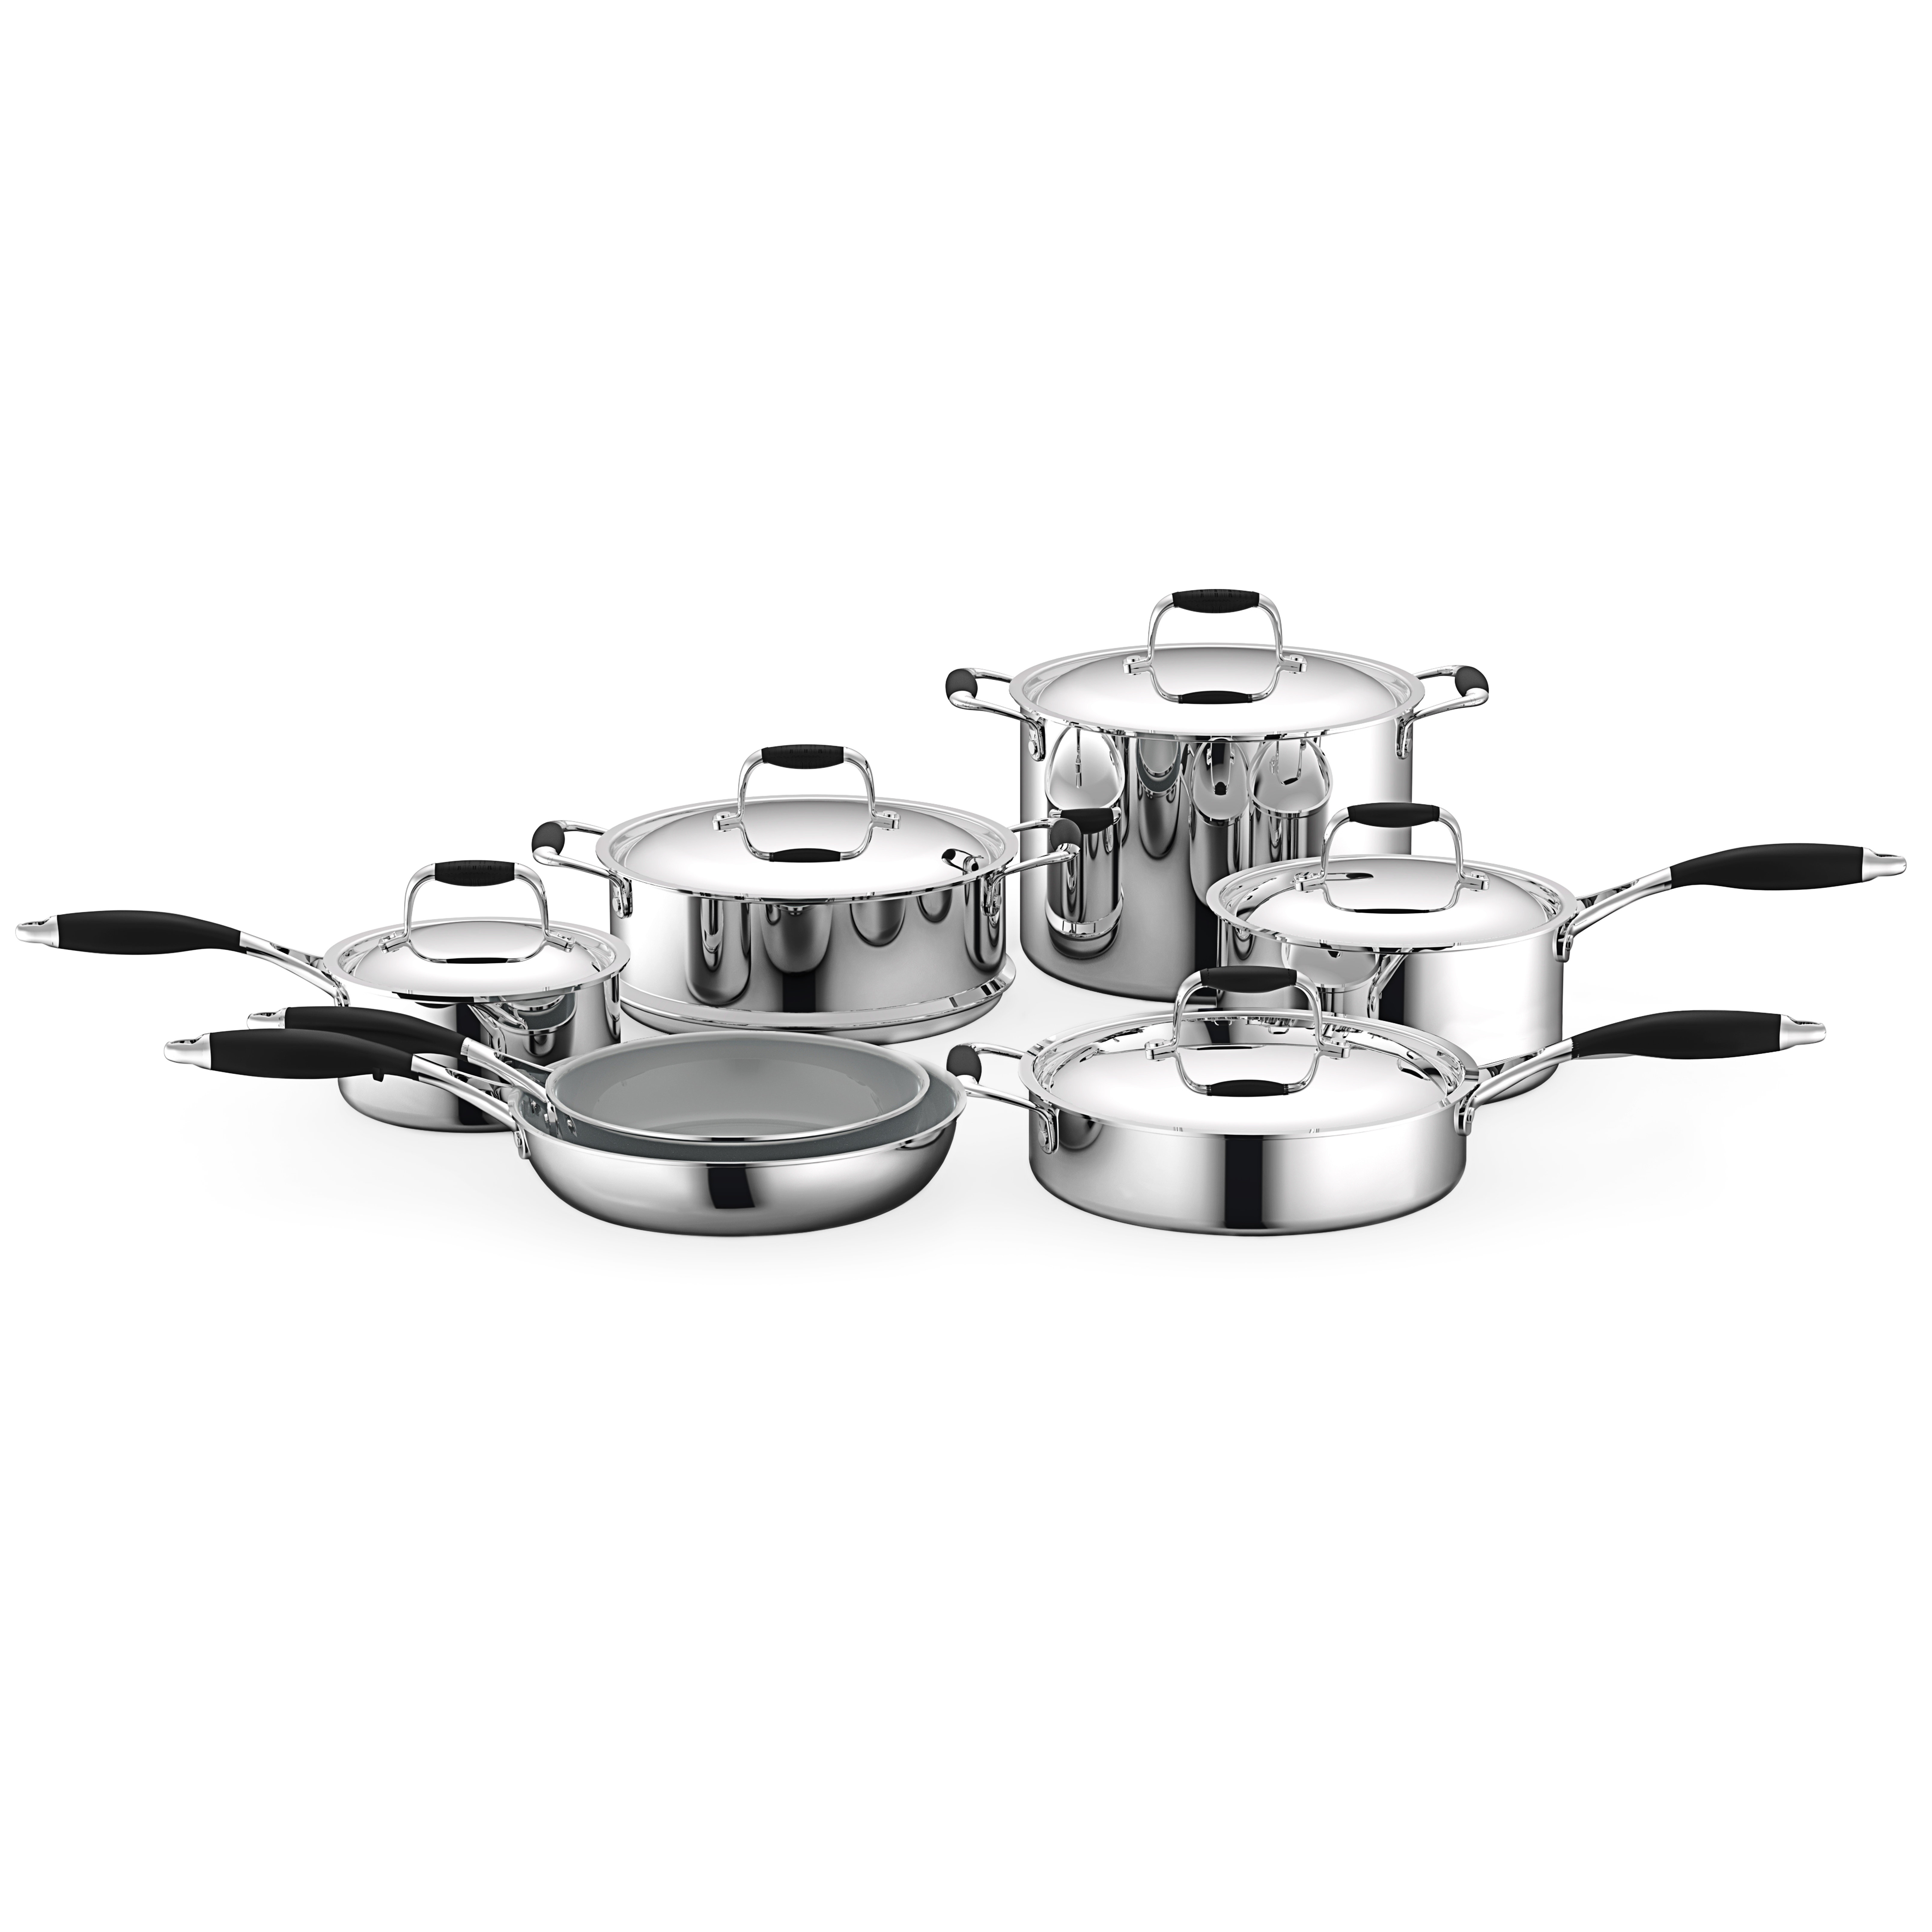 https://assets.wfcdn.com/im/35954355/compr-r85/2005/200552052/12-piece-non-stick-stainless-steel-1810-cookware-set.jpg